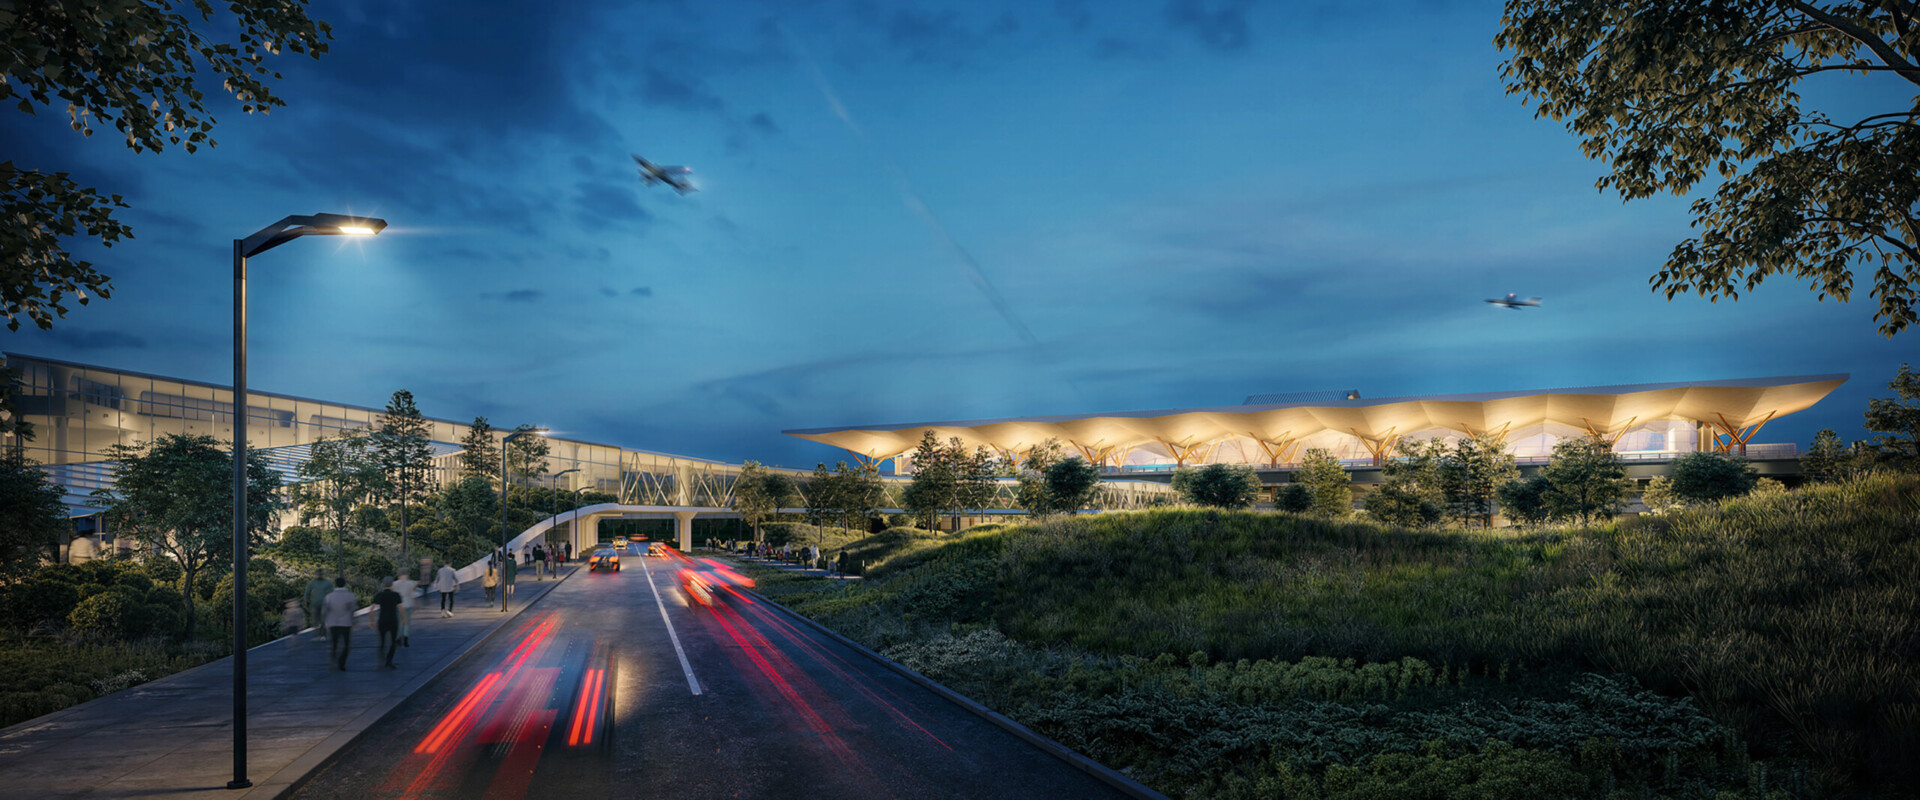 Programa de Modernización de la Terminal del Aeropuerto Internacional de Pittsburgh